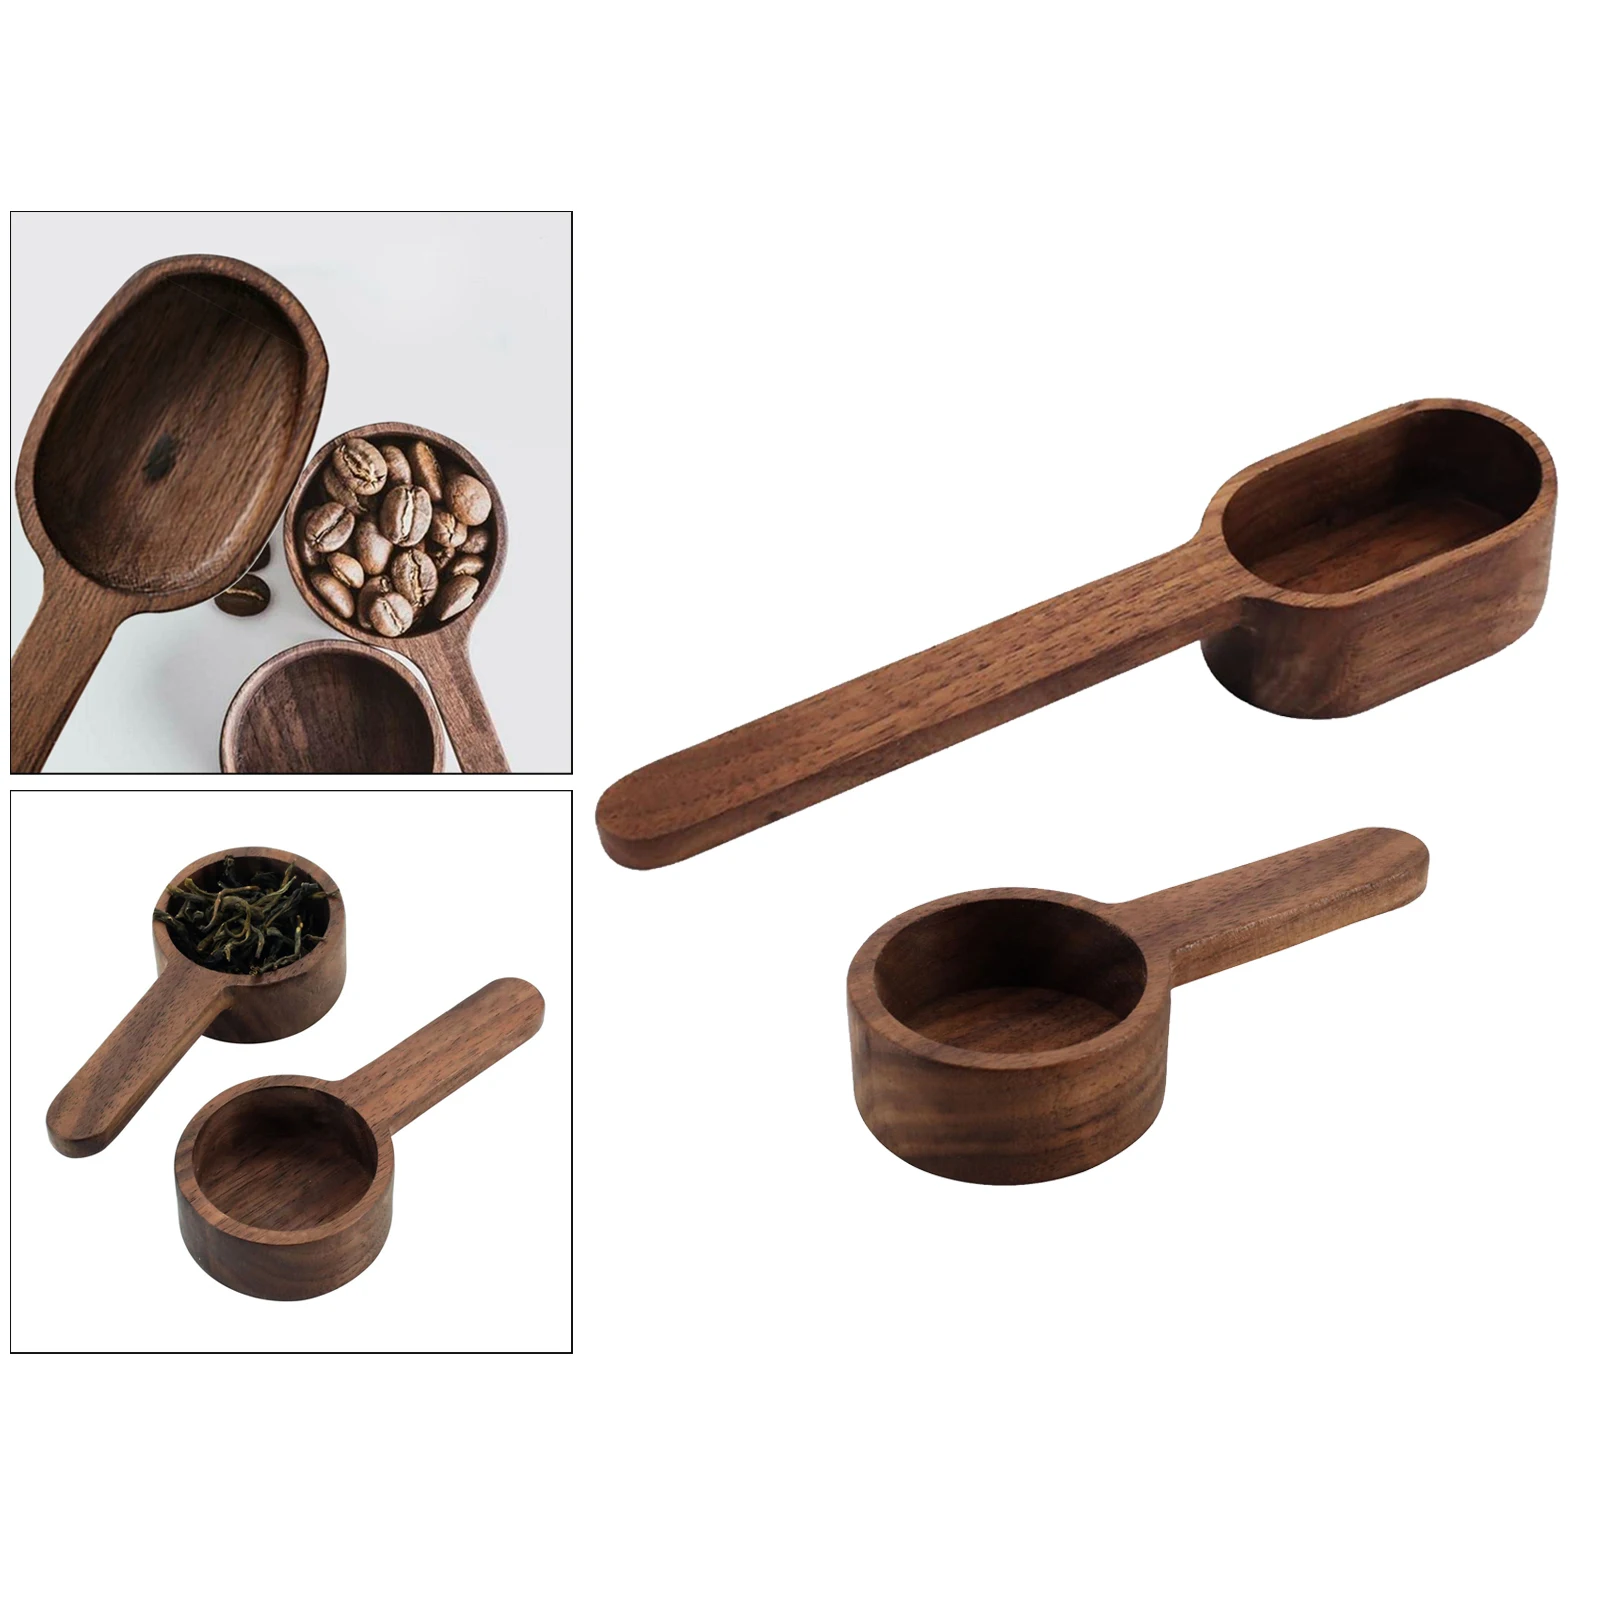 Wooden Measuring Spoons Wood Spoon Sugar Salt Measuring Scoop Baking Tools